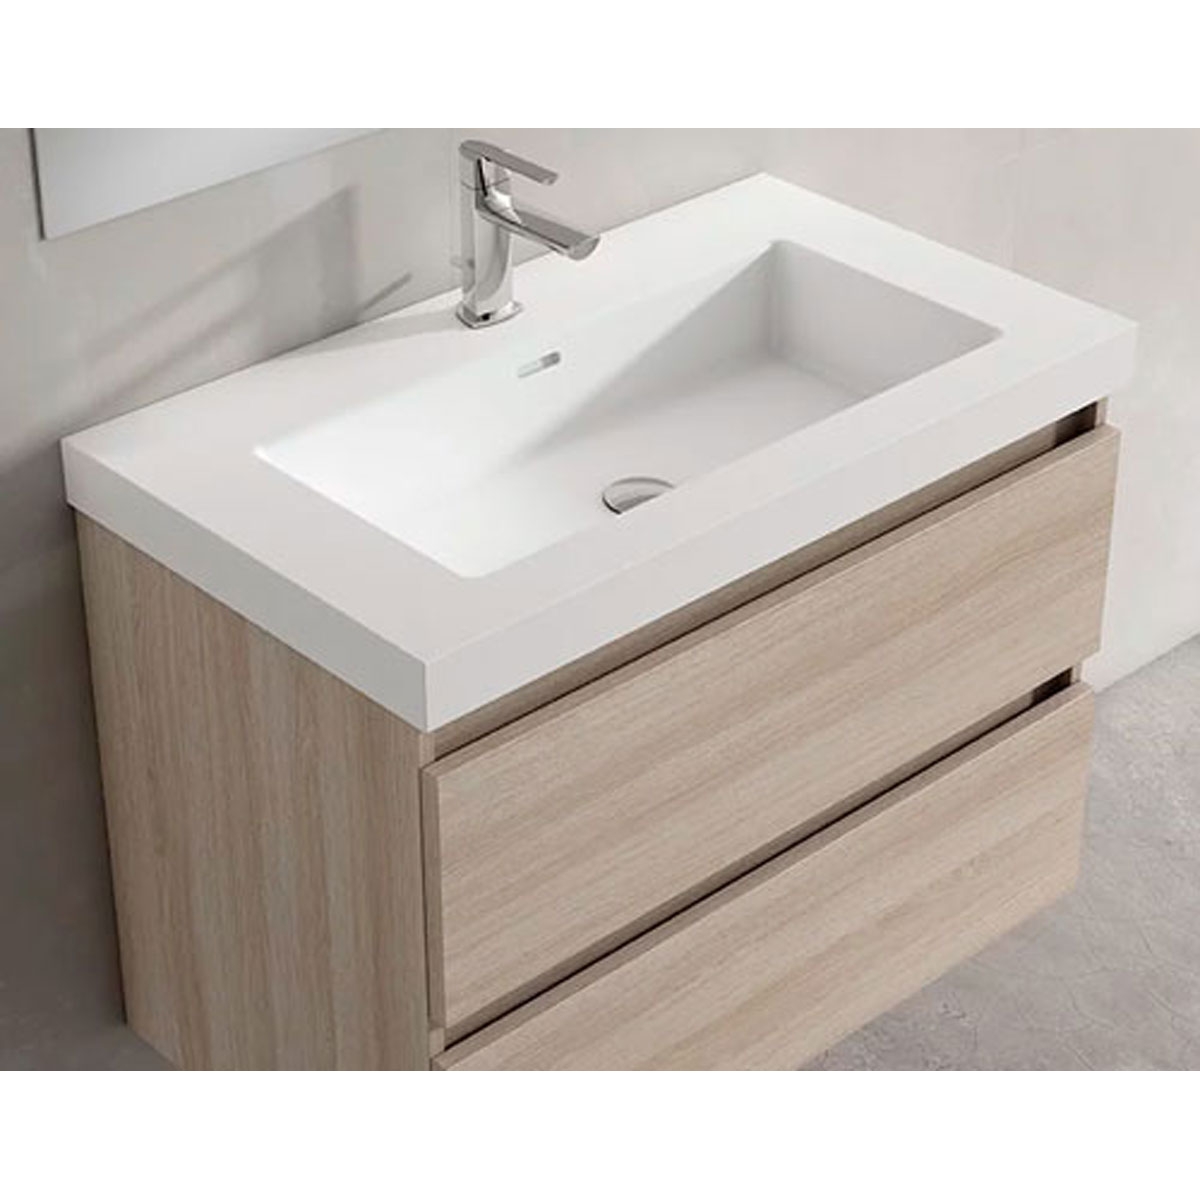 Mueble de baño de suelo de 60 cm con 3 cajones con lavabo integrado acabado crudo Modelo Granadar